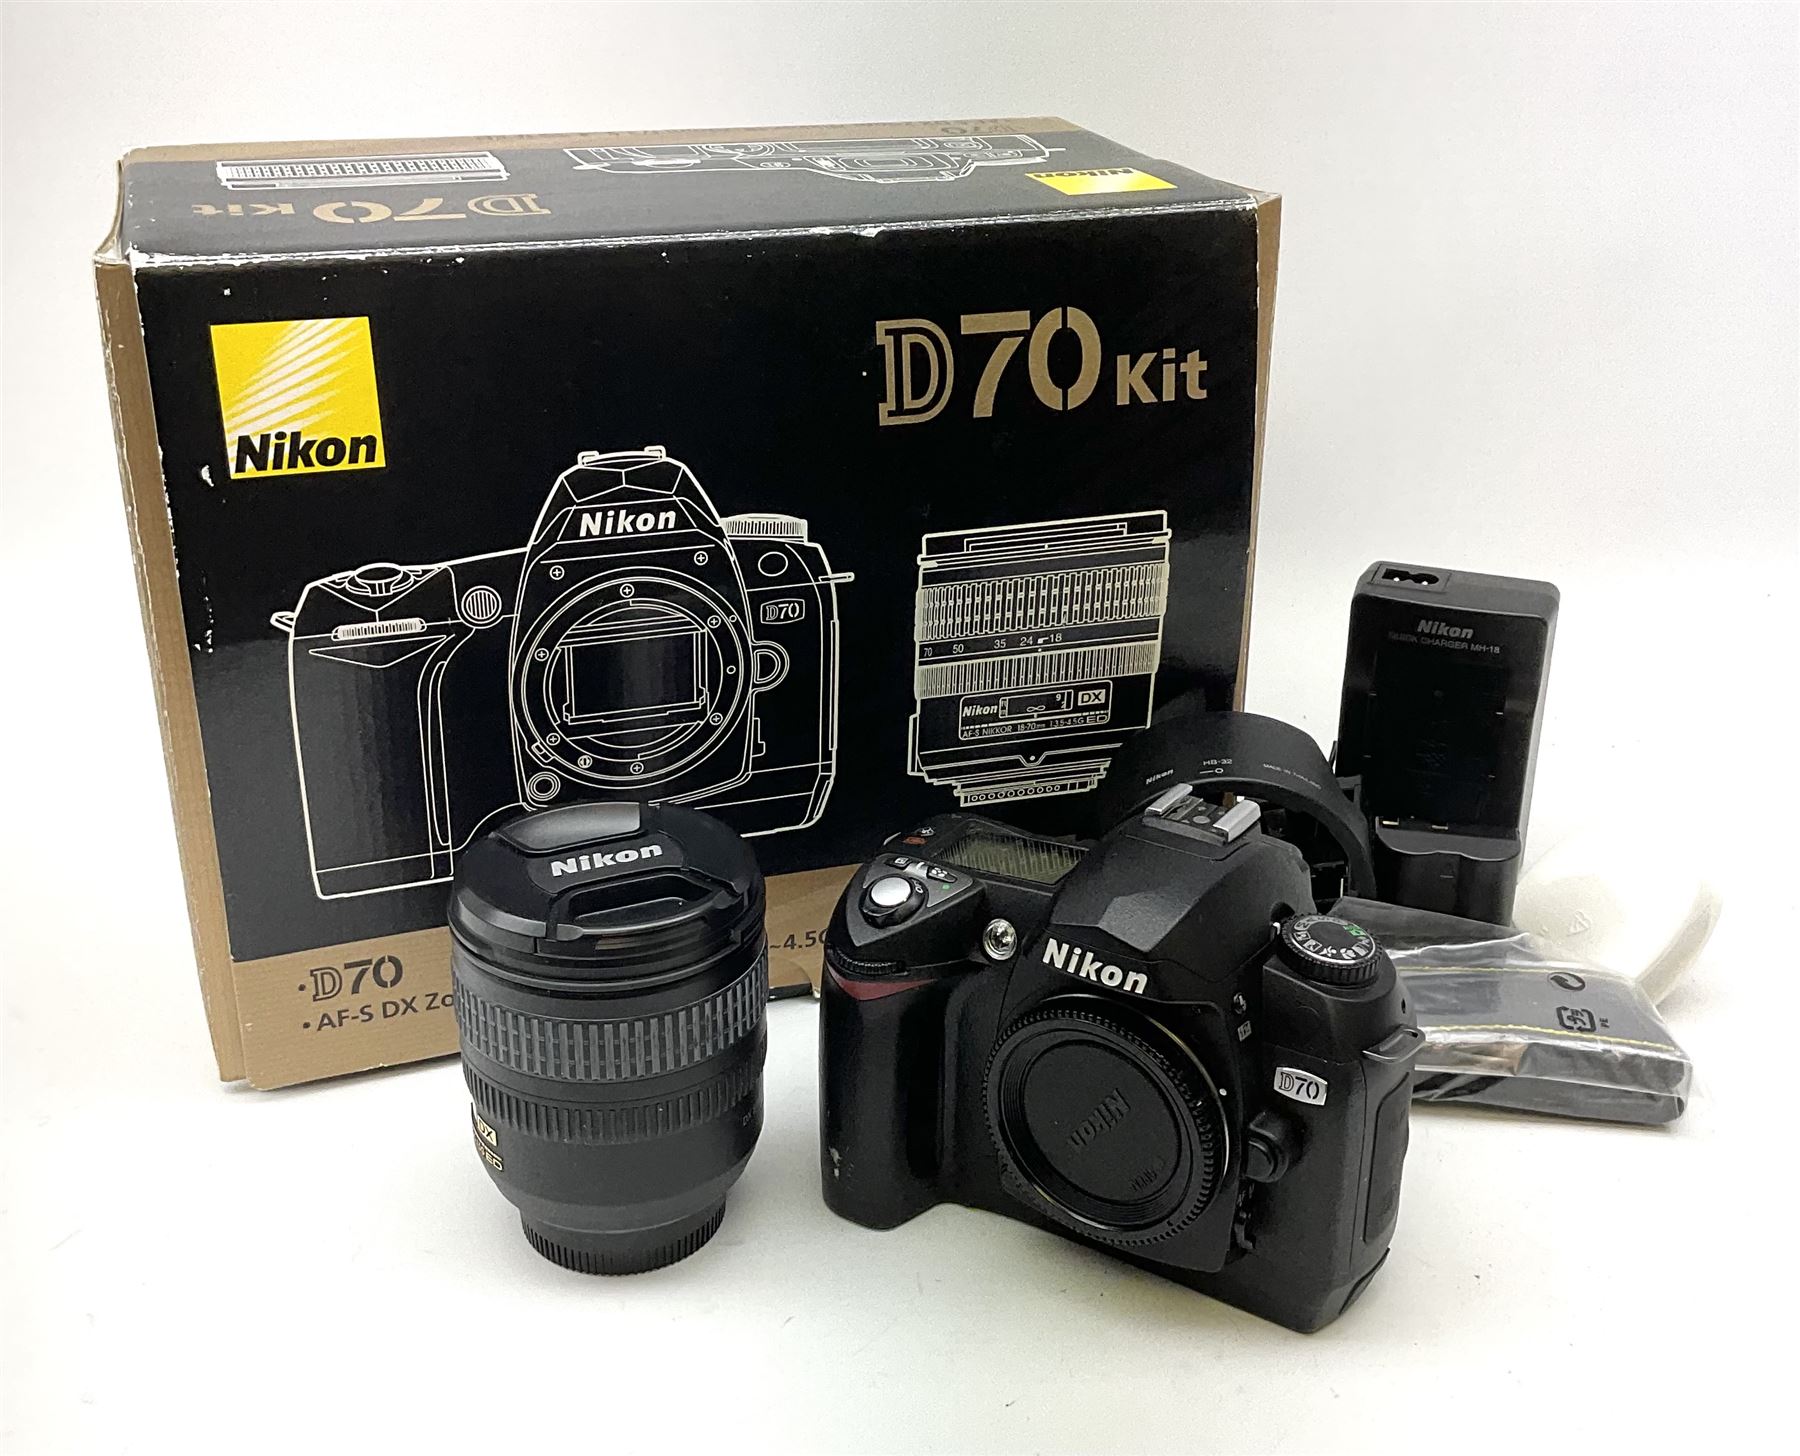 Nikon D70 Kit with AF-S Zoom Nikkor 18-70mm f/3.5~4.5G lens